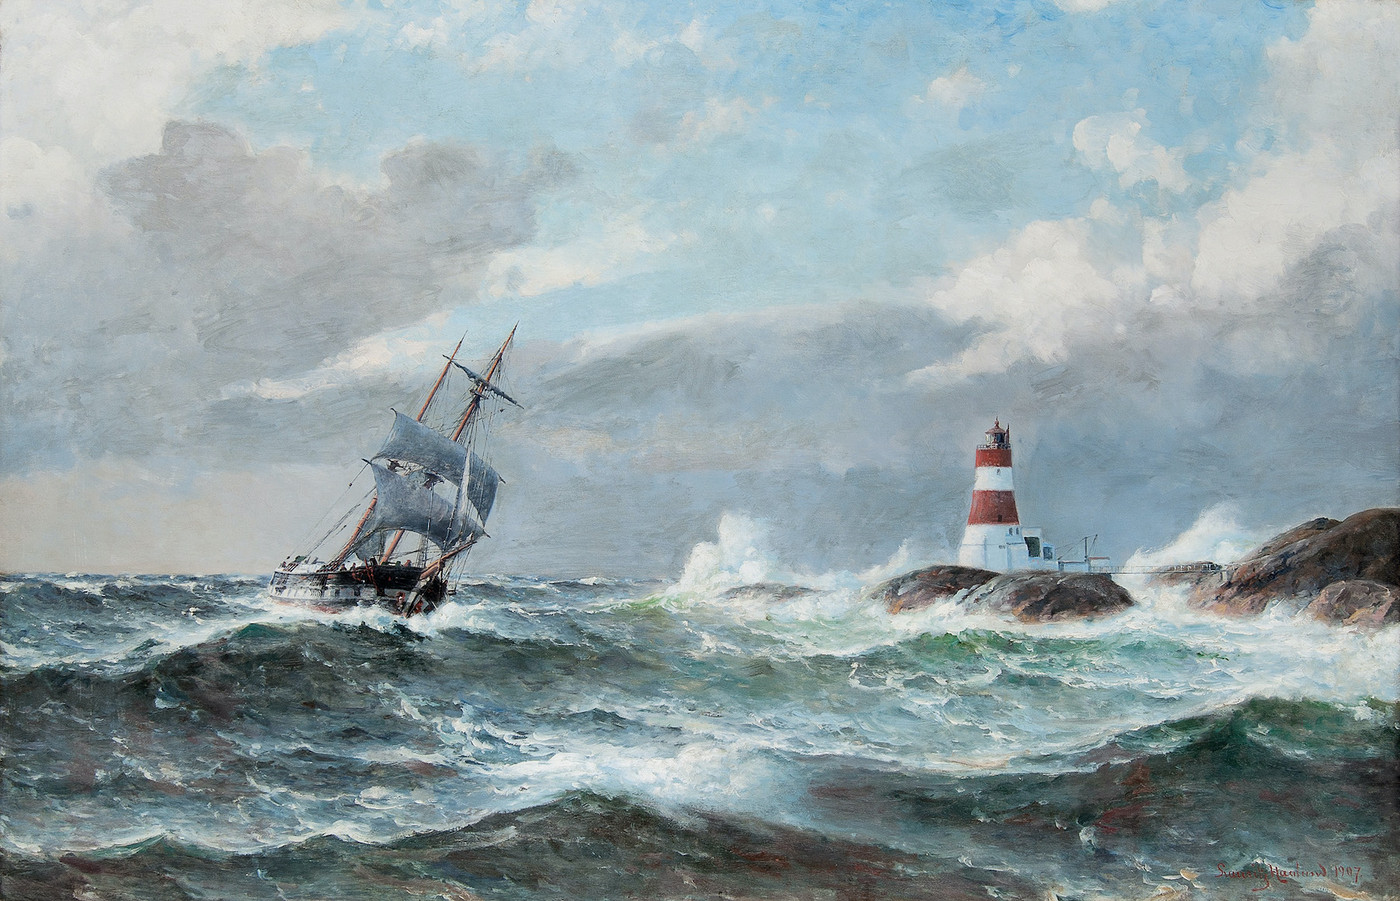 Sailing Ship at Lille Præsteskjær Lighthouse (1907)